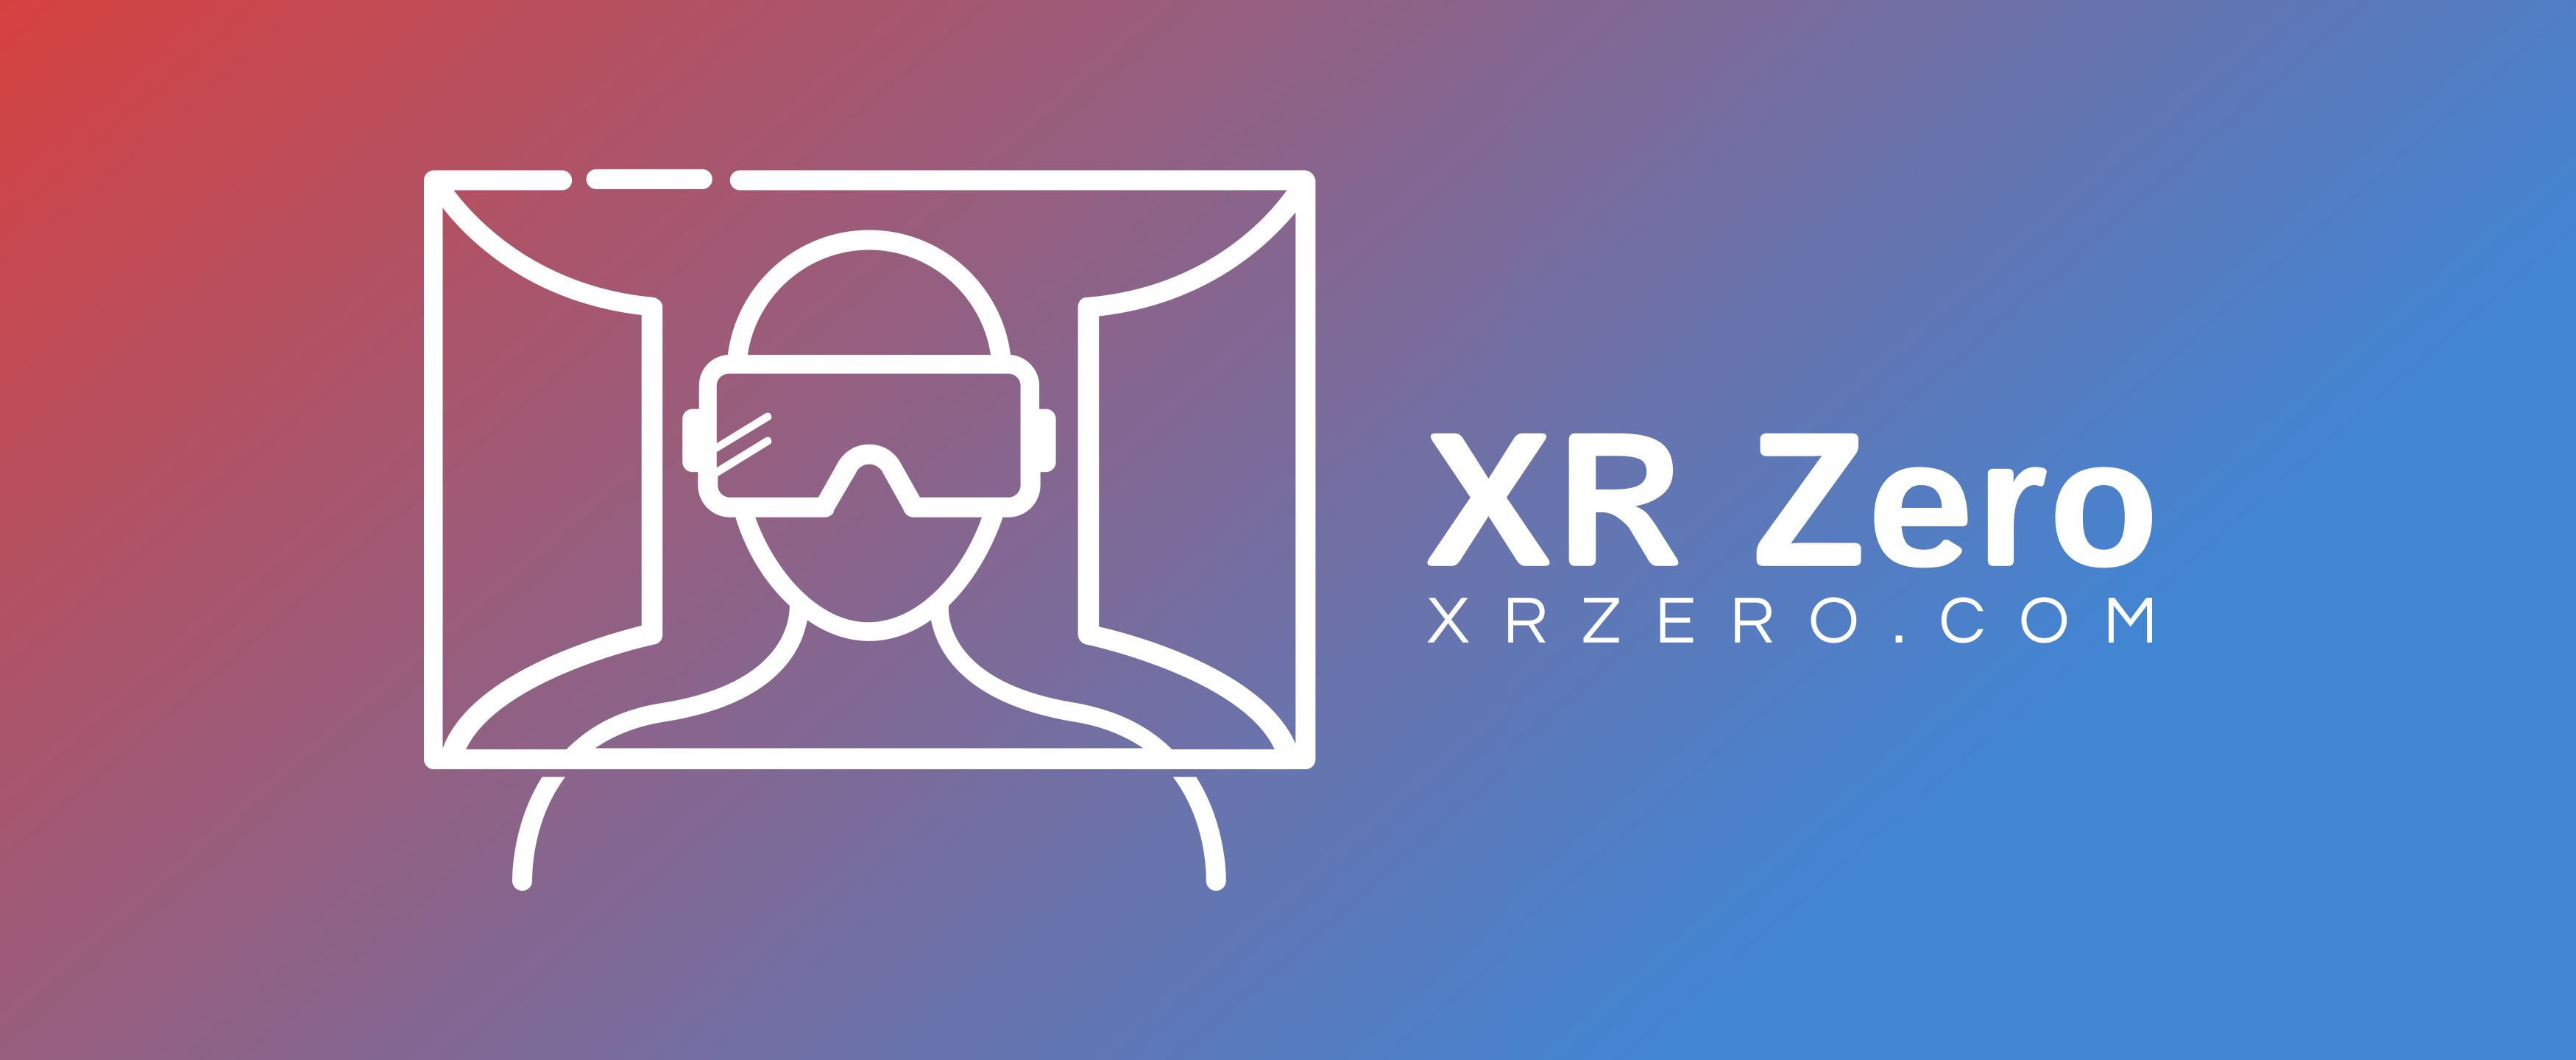 XR Zero